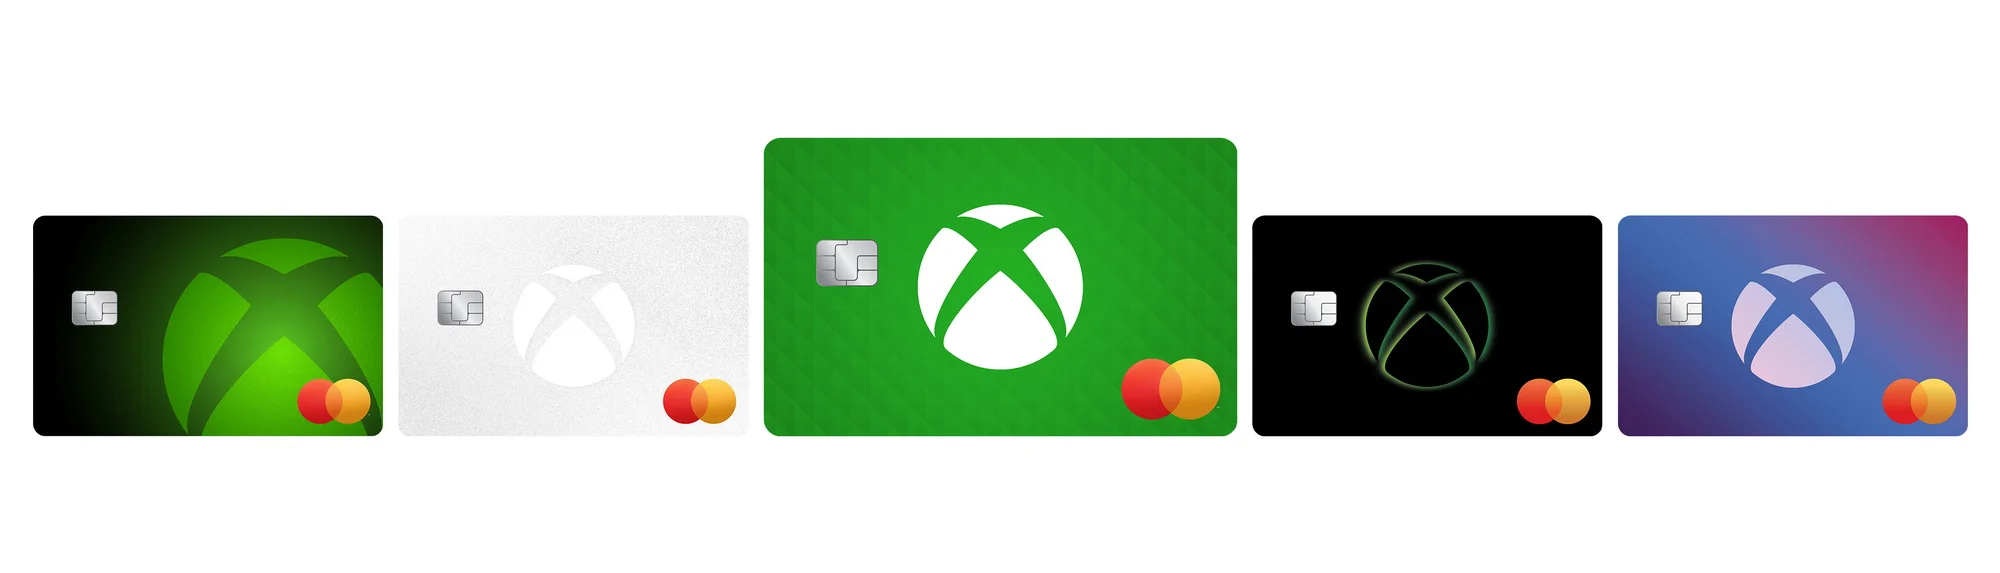 В следующем году Microsoft запустит в США кредитную карту Xbox Mastercard - фото 1